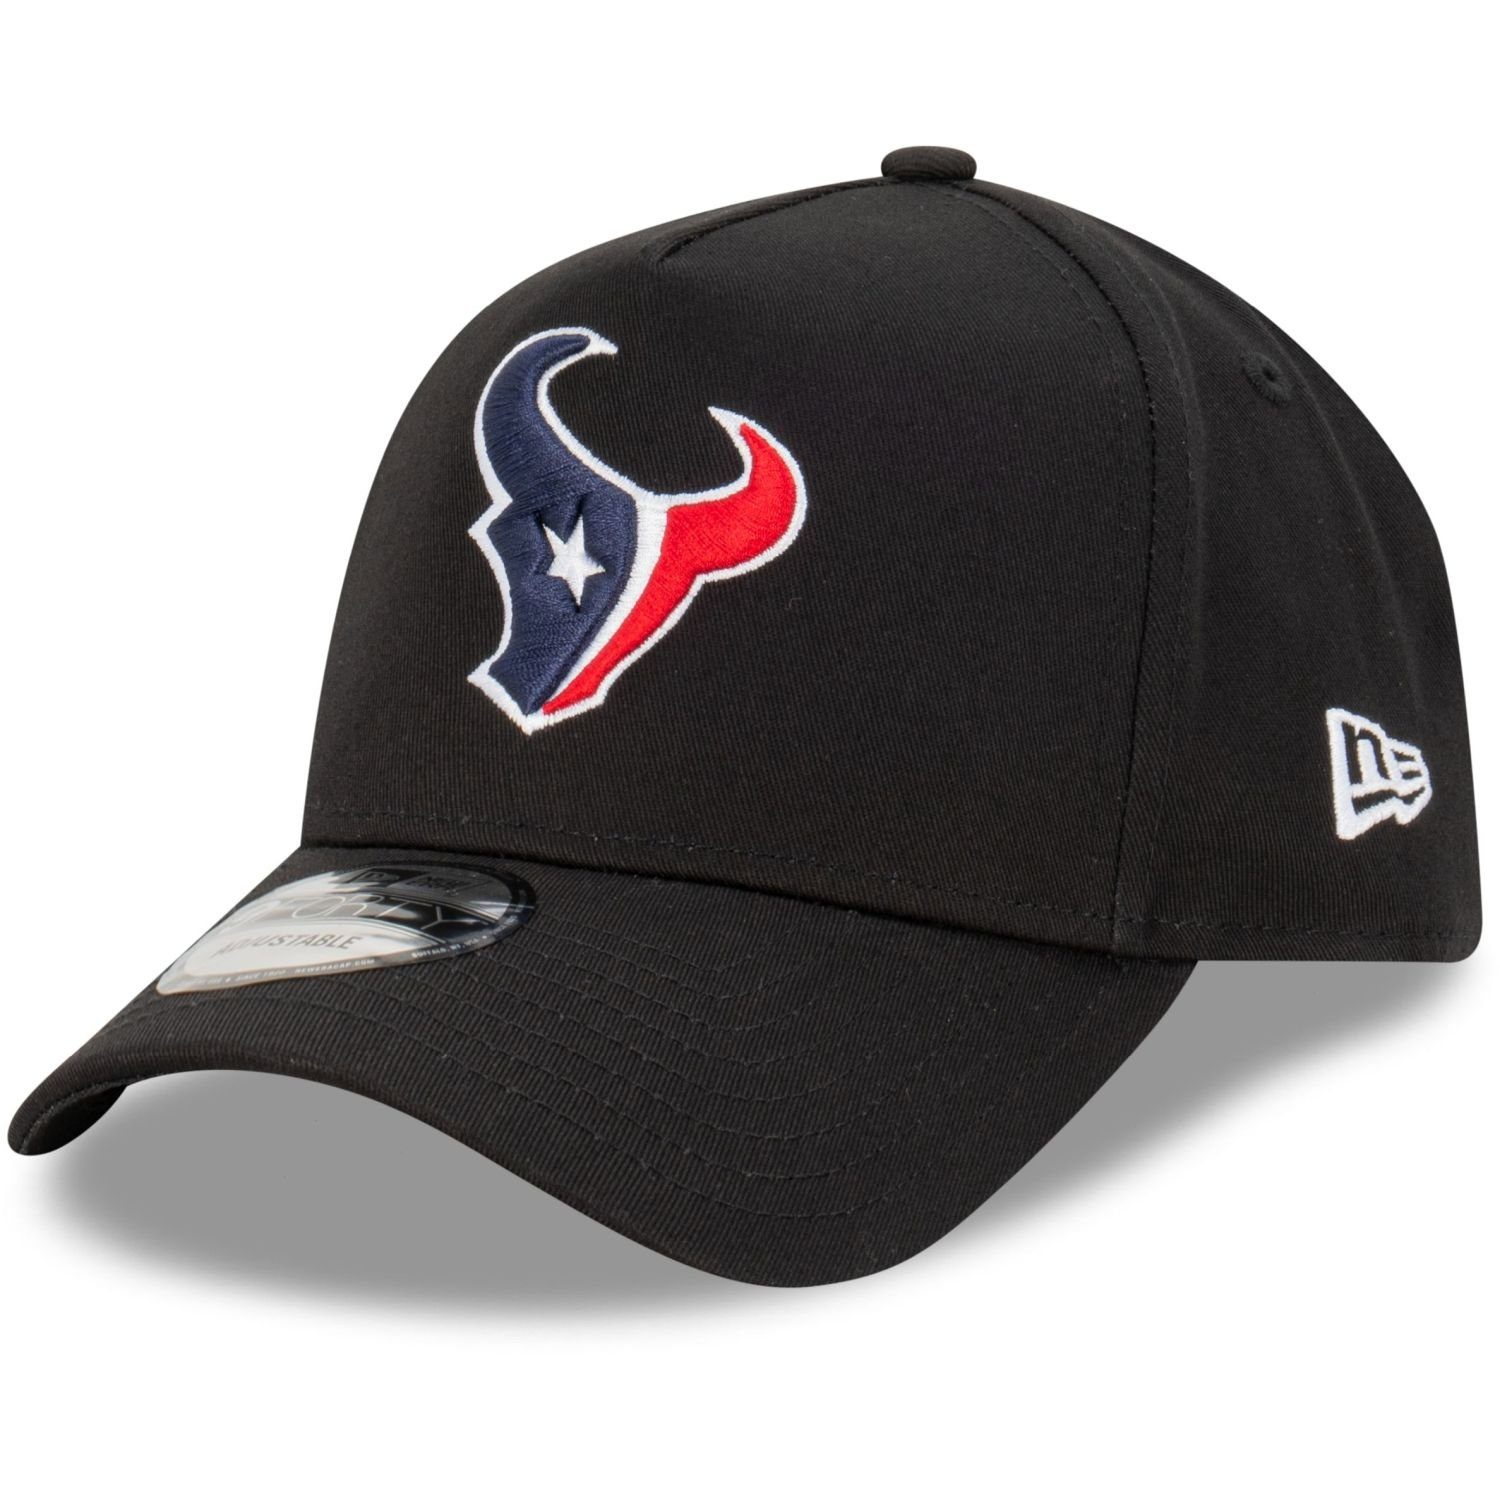 Trucker Houston Era NFL Cap Trucker Teams 9Forty AFrame New Texans